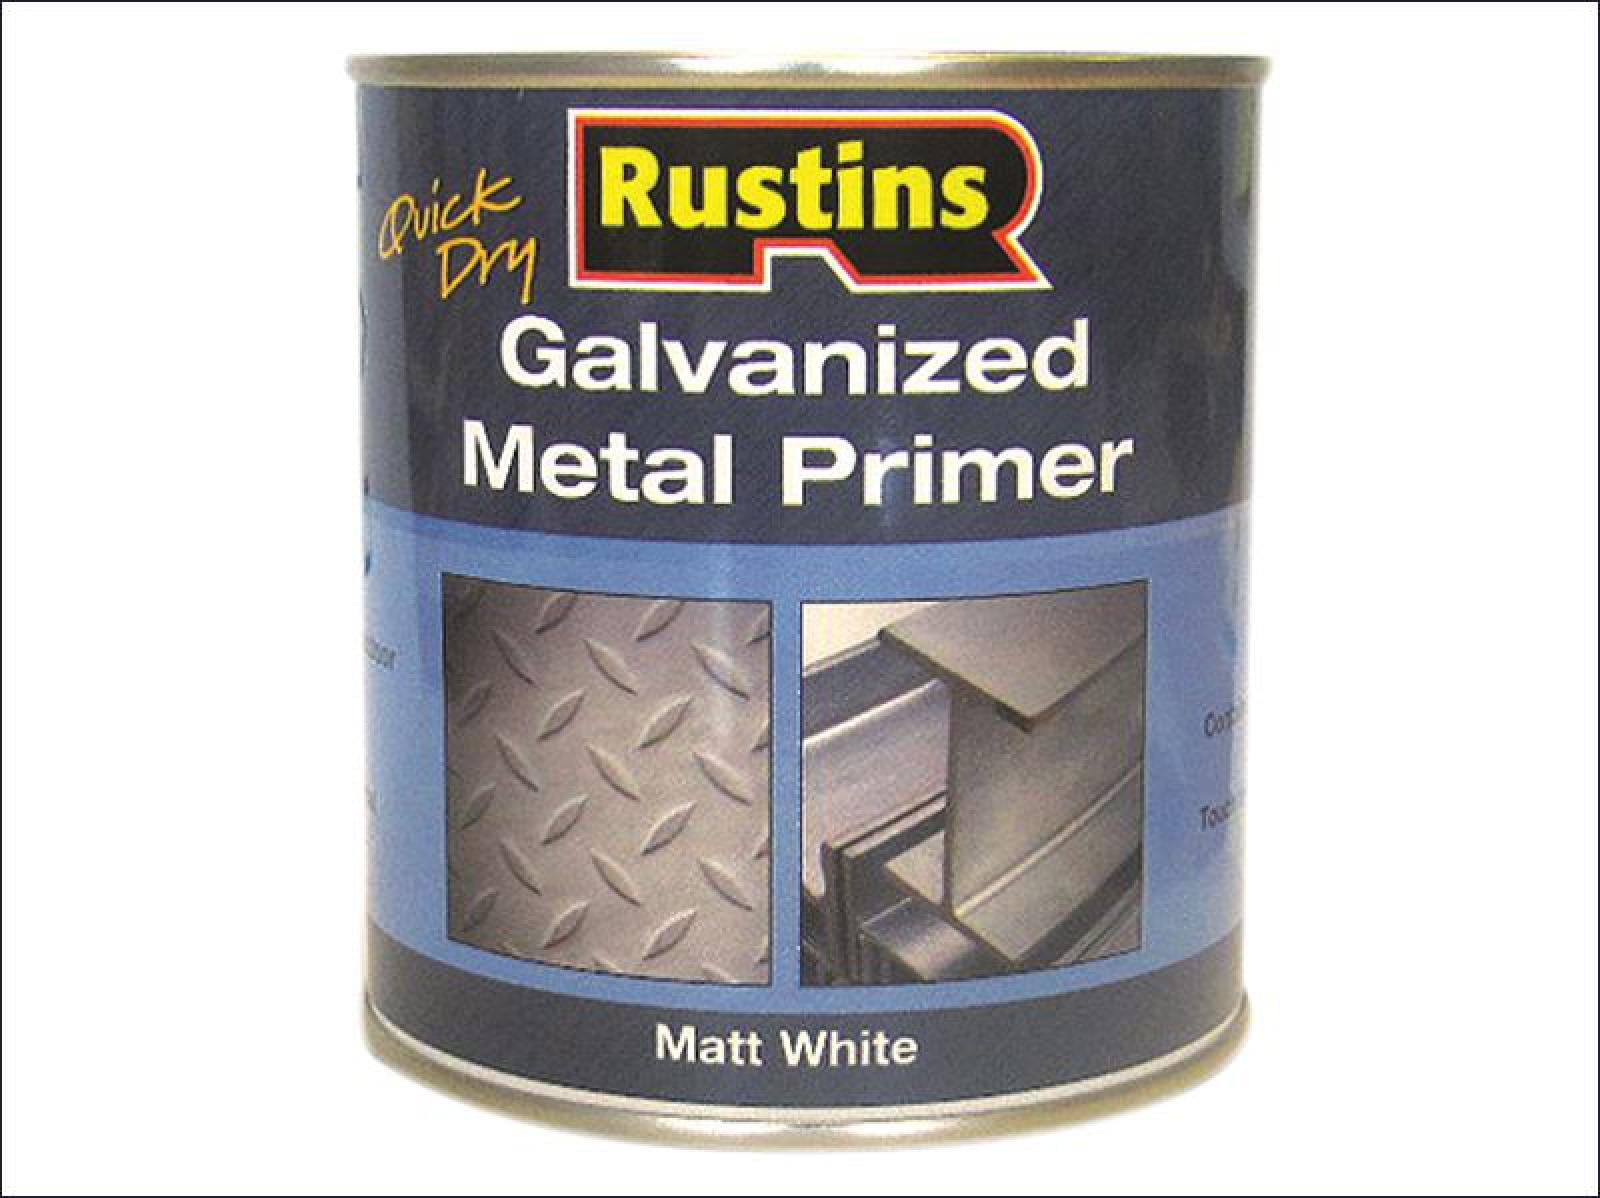 611-88-LV Defi-Rust Oil Base Galvanized Metal Primer White - Major